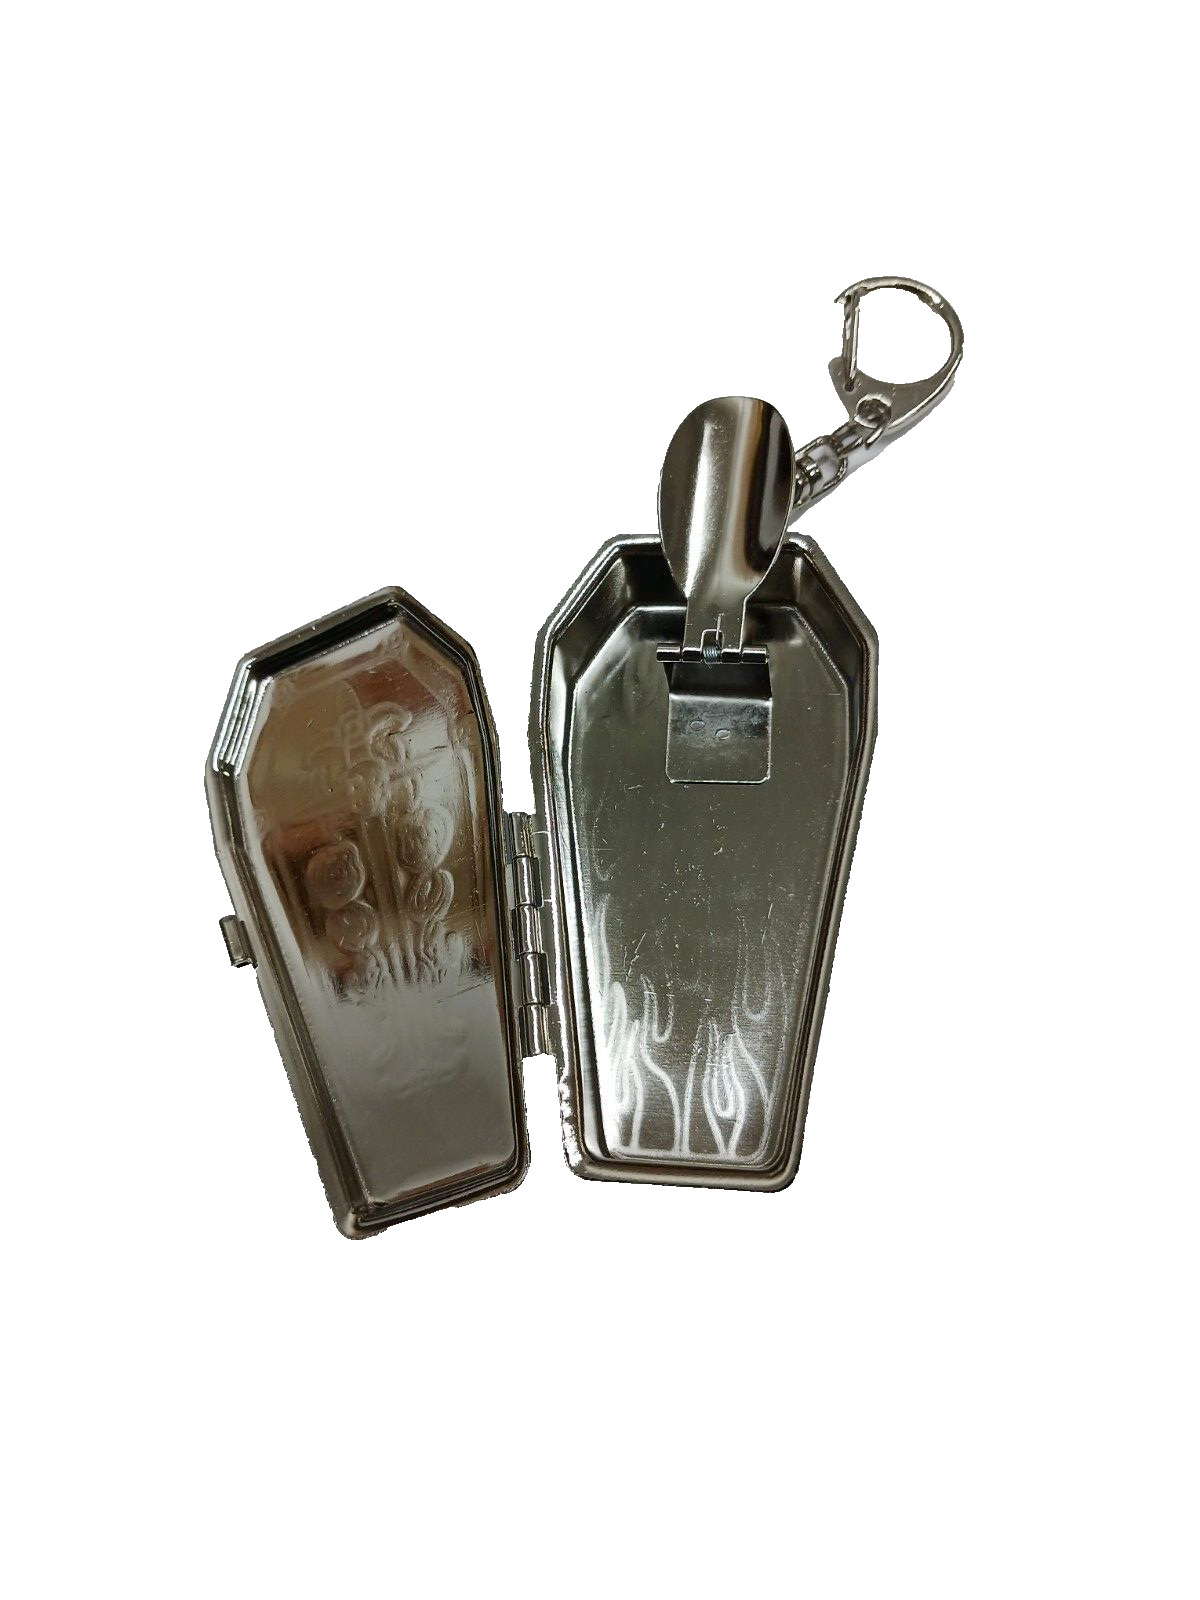 1 PC portable metal mini coffin cigarette ashtray w/keychain multi images 70006